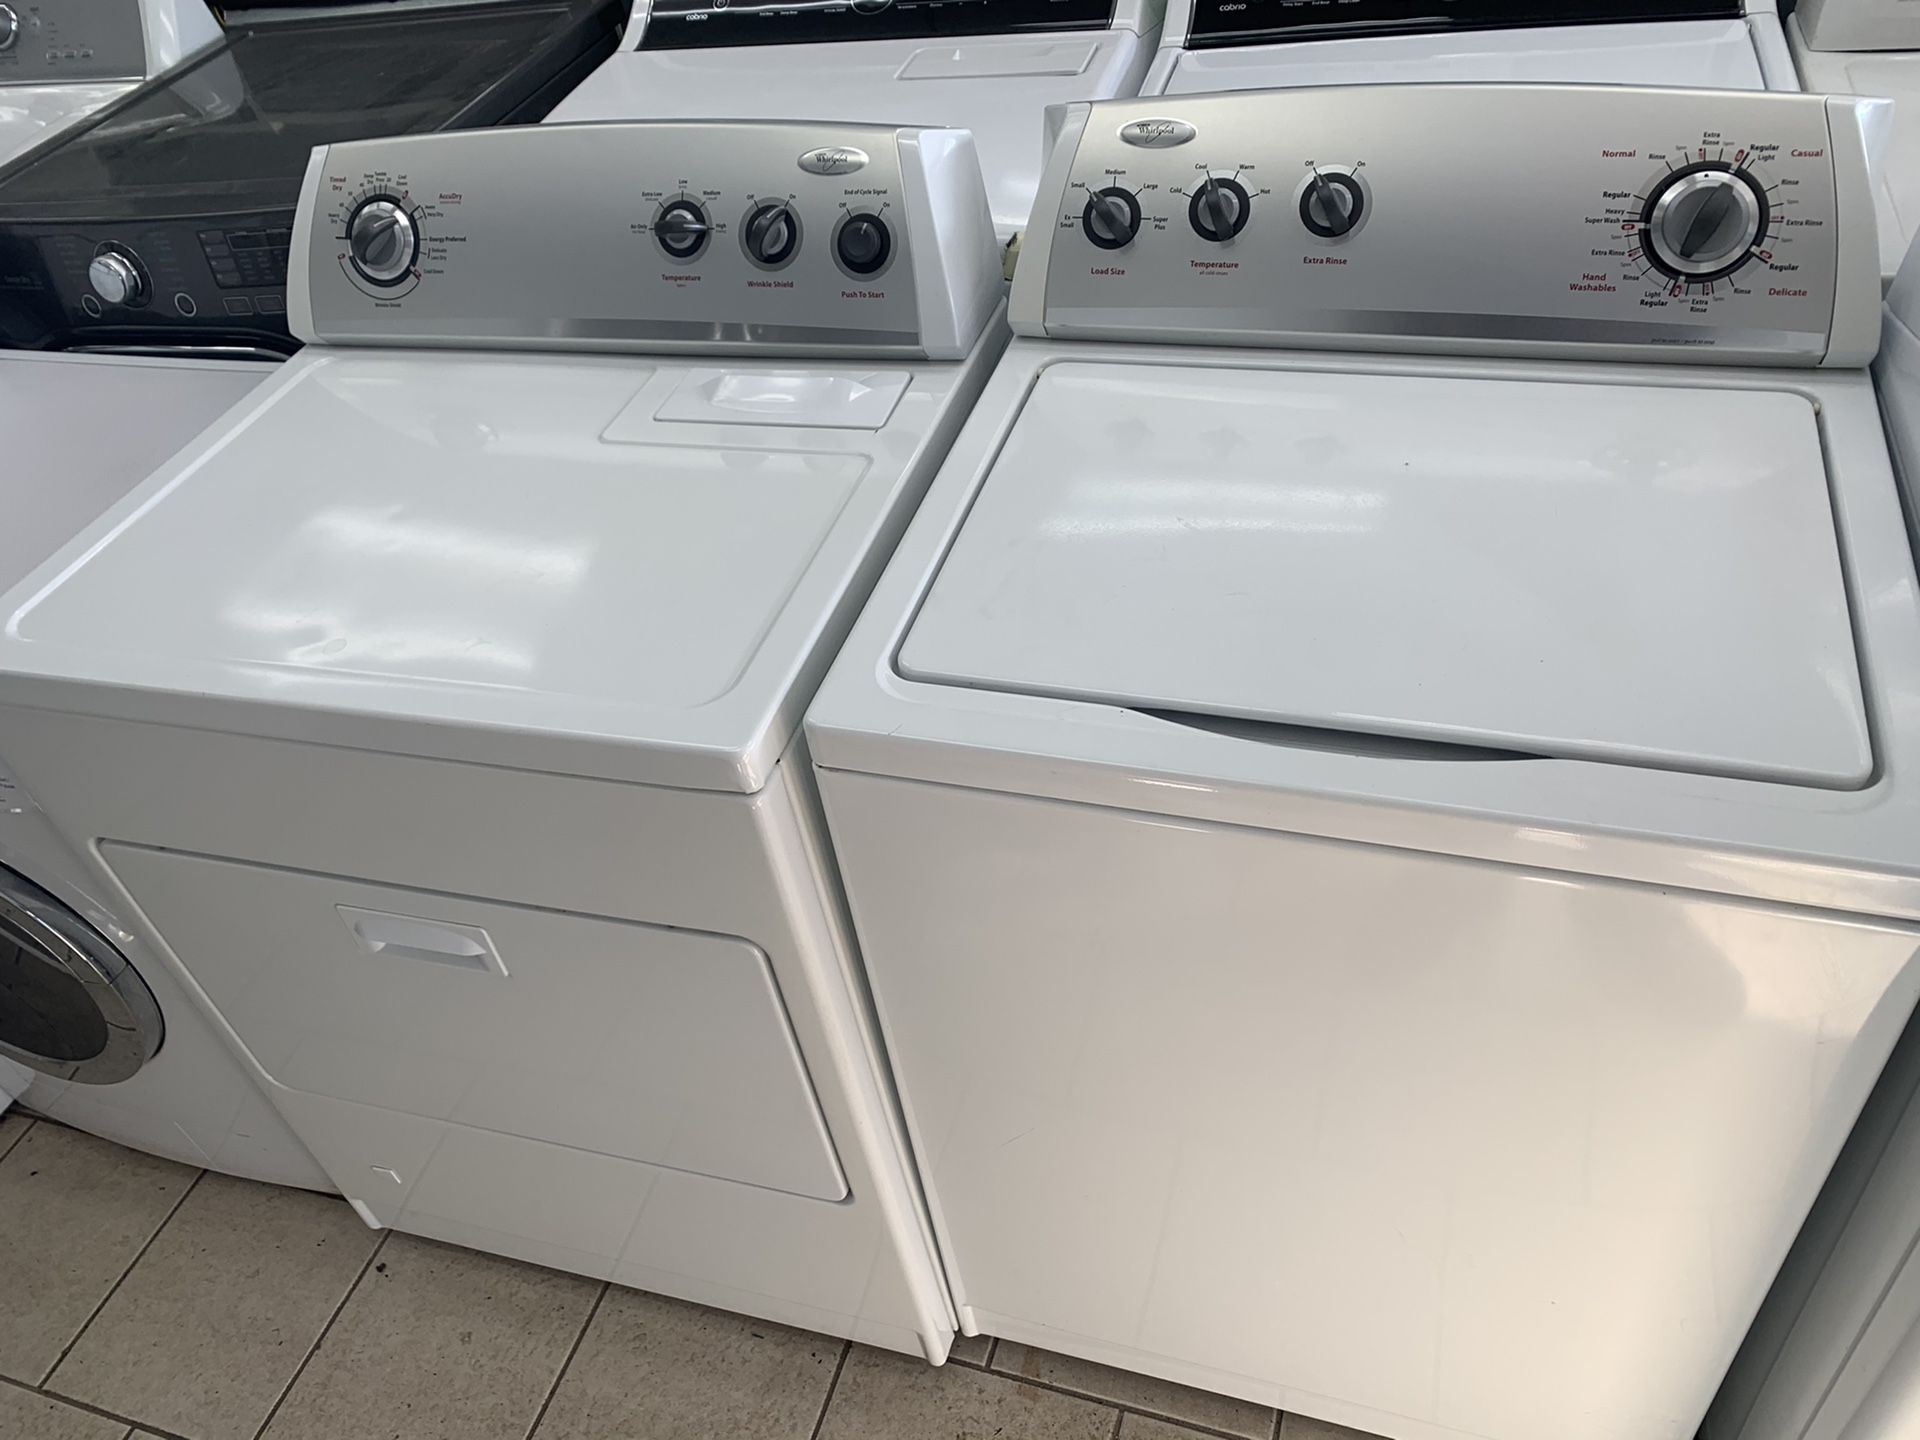 Whirlpool washer dryer set (gas dryer)